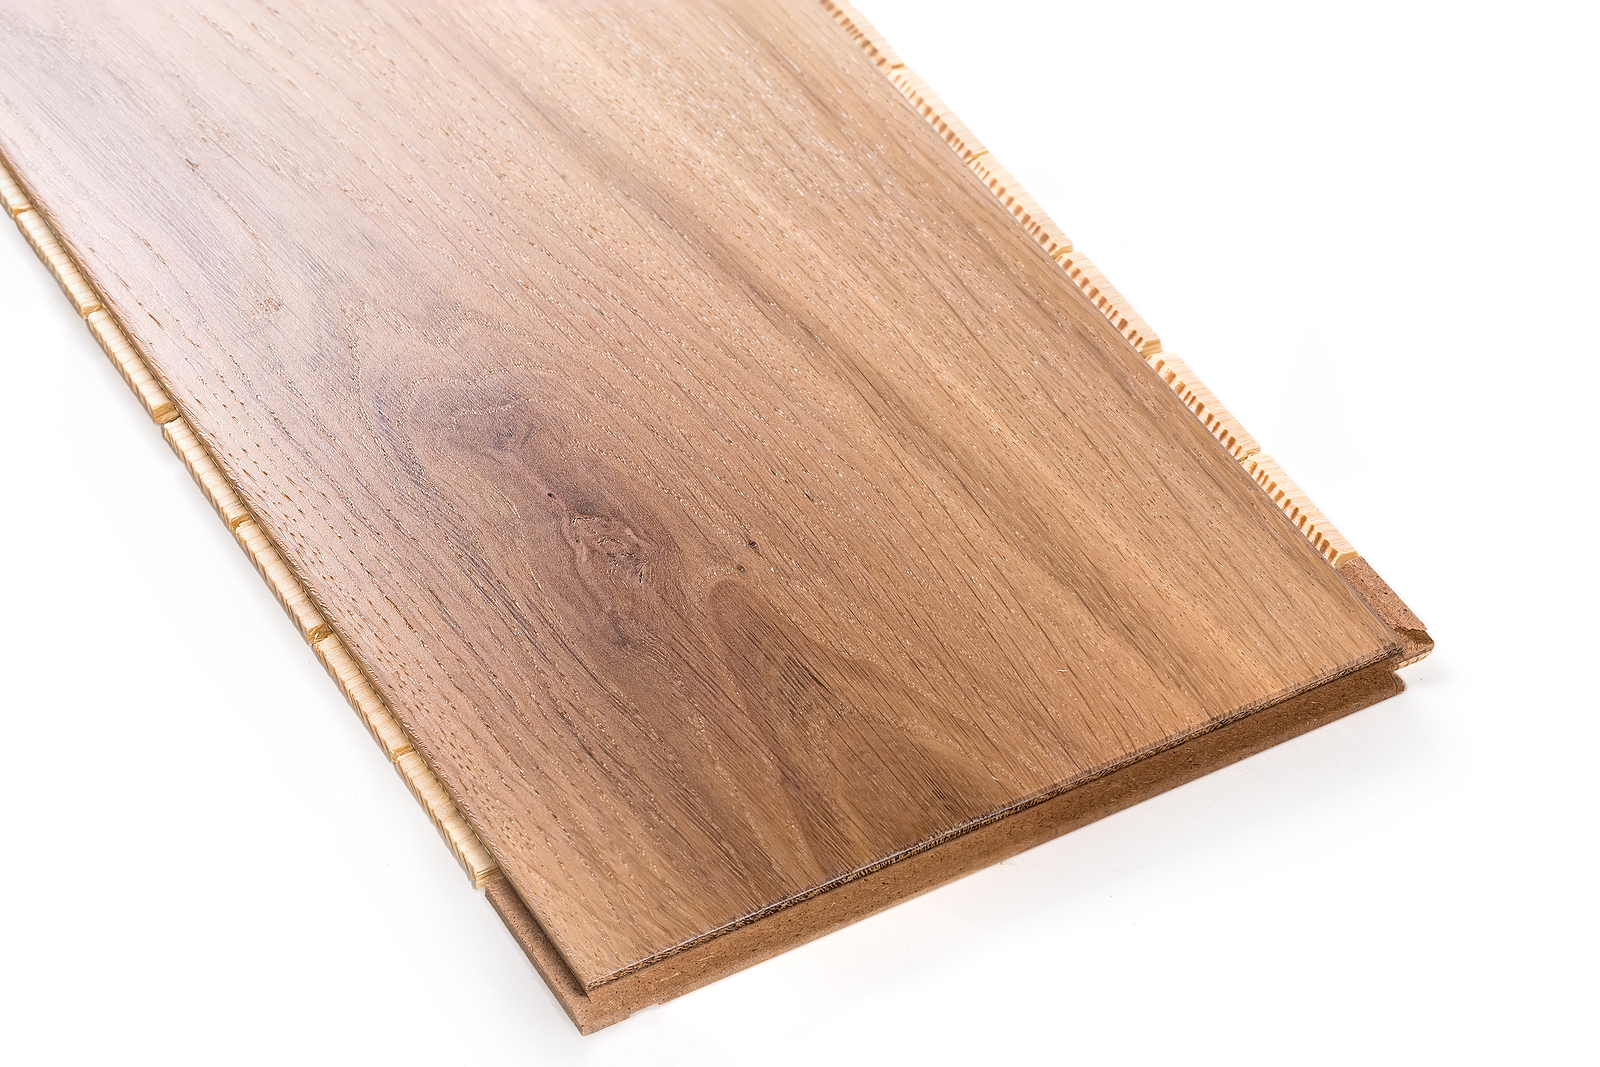 Three-layer Engineered Wood Flooring Board